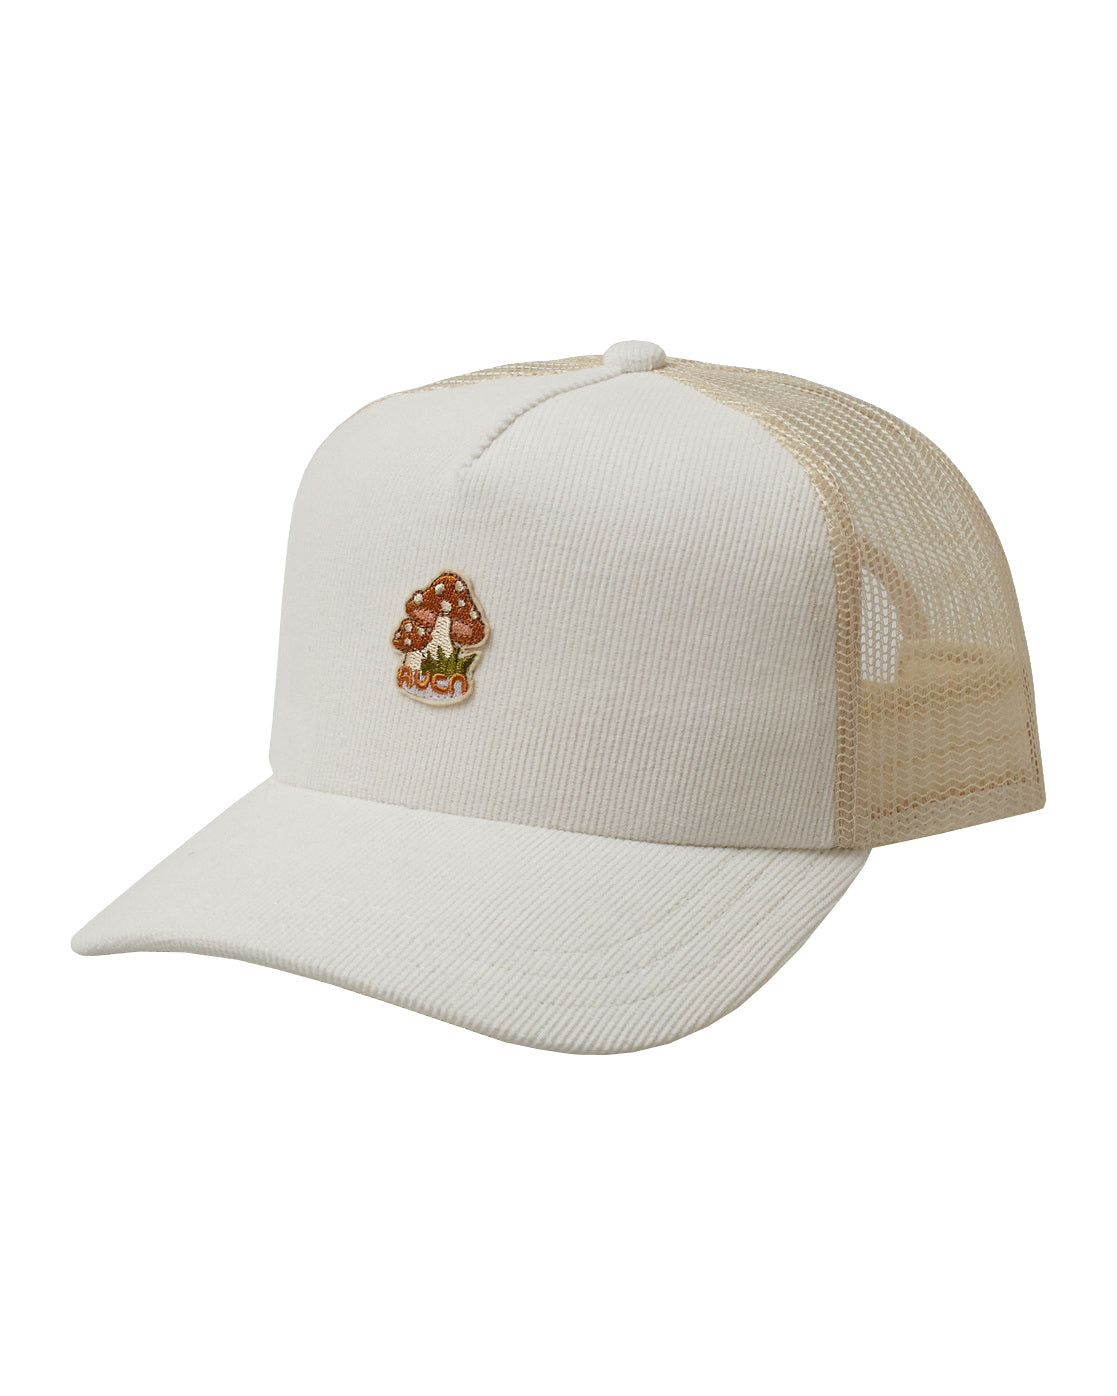 RVCA Mushies Trucker Hat